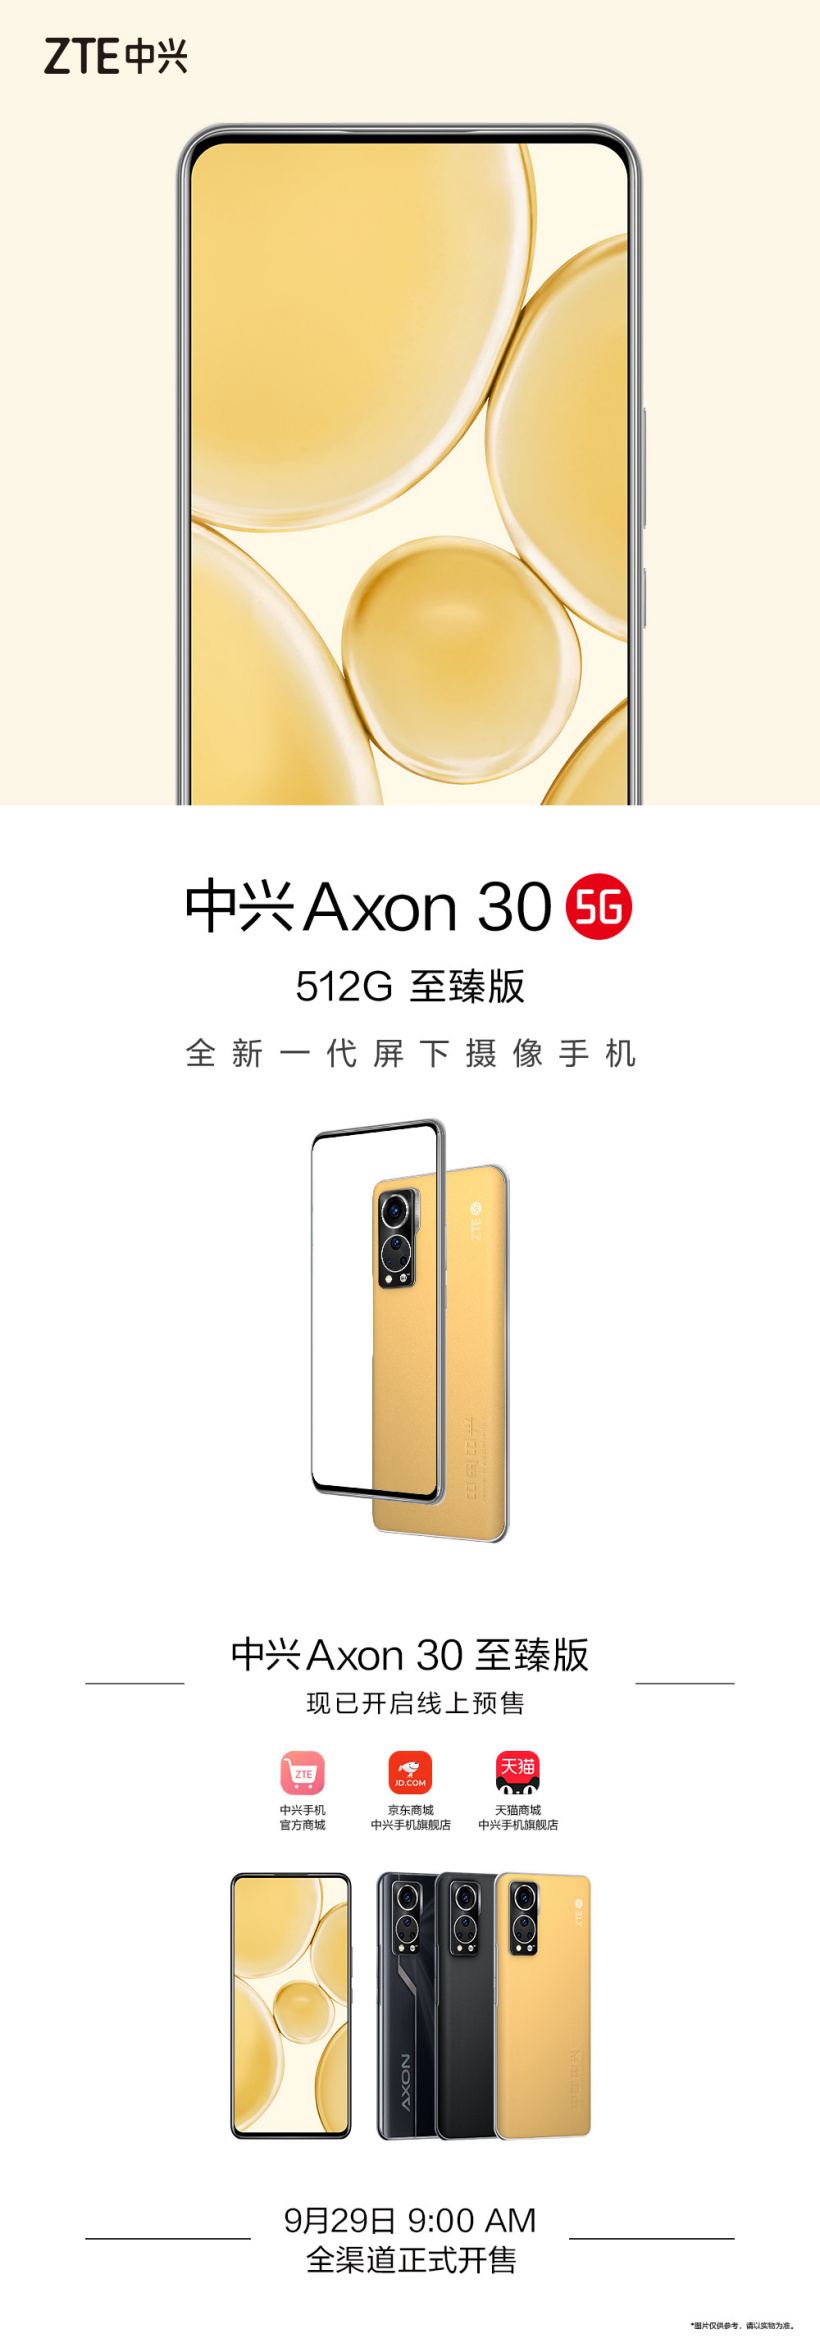 中兴 Axon 30 至臻版9月29日全渠道开售 线上预售已开启